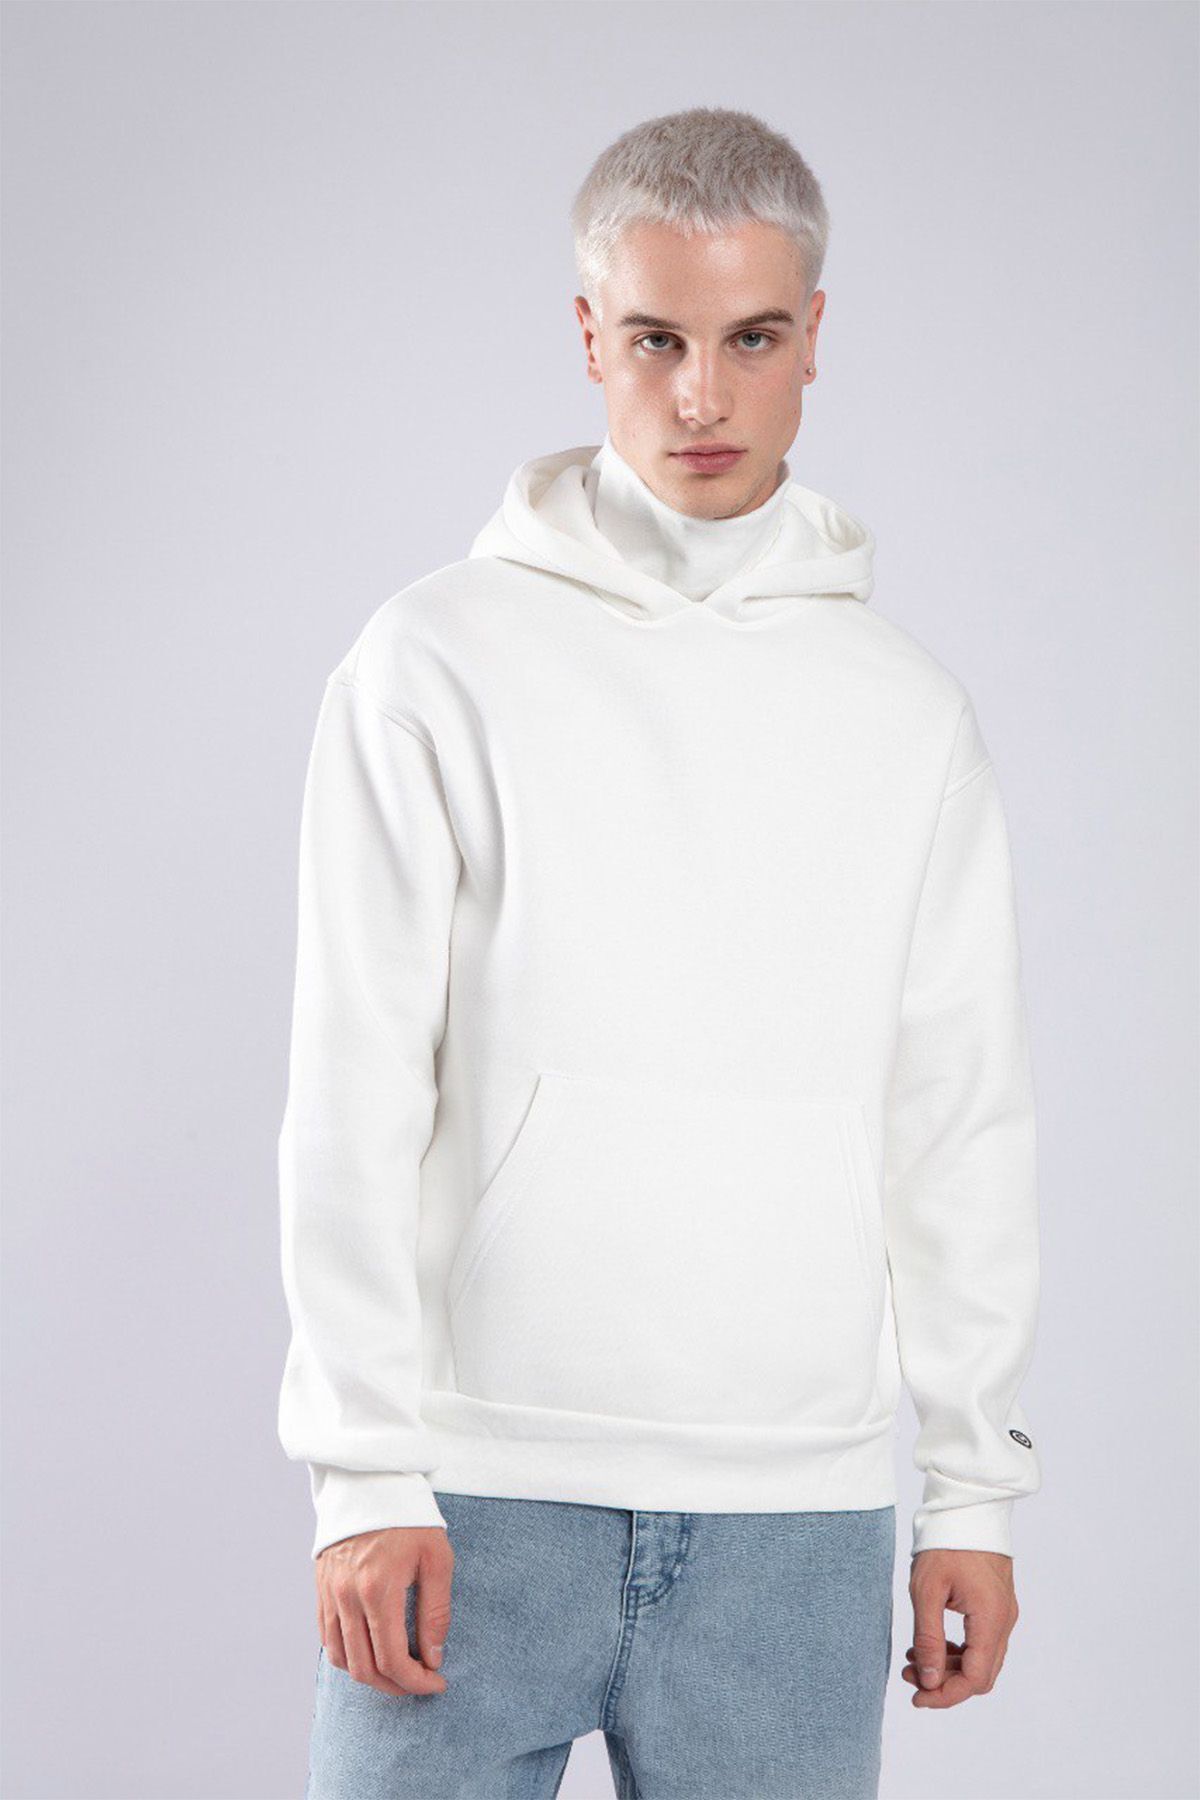 XHAN Beyaz Boğazlı Oversize Kapüşonlu Sweatshirt 3YXE8-47563-01